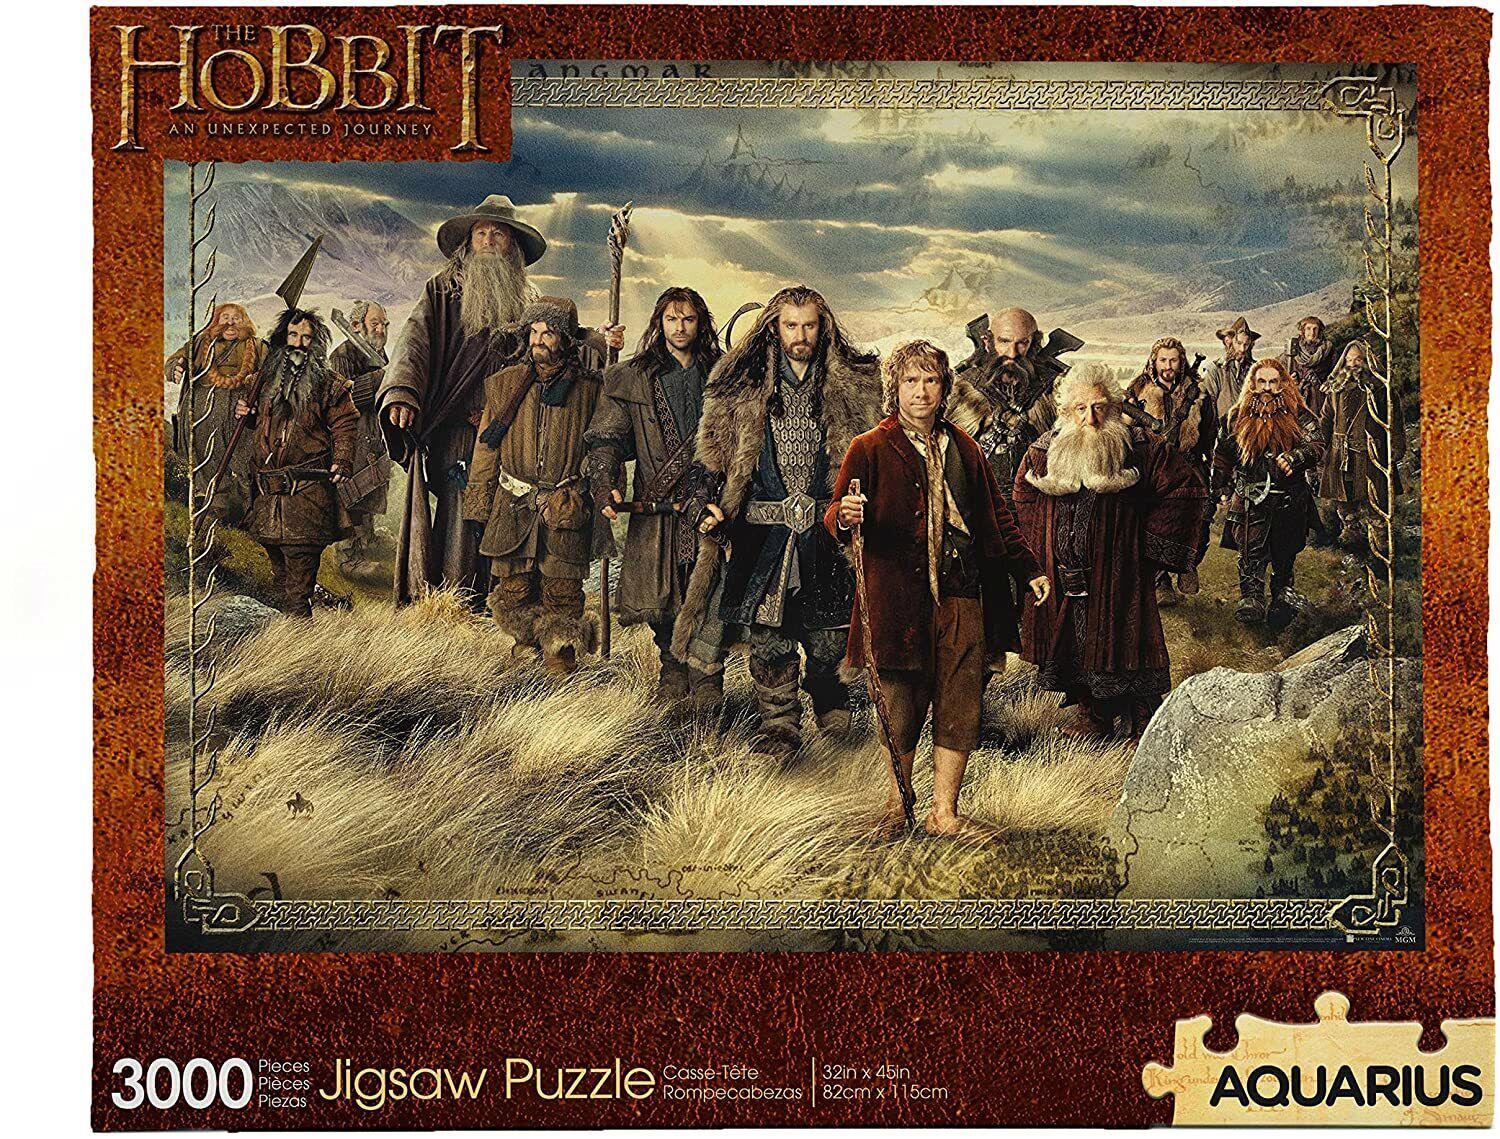 The Hobbit 3000